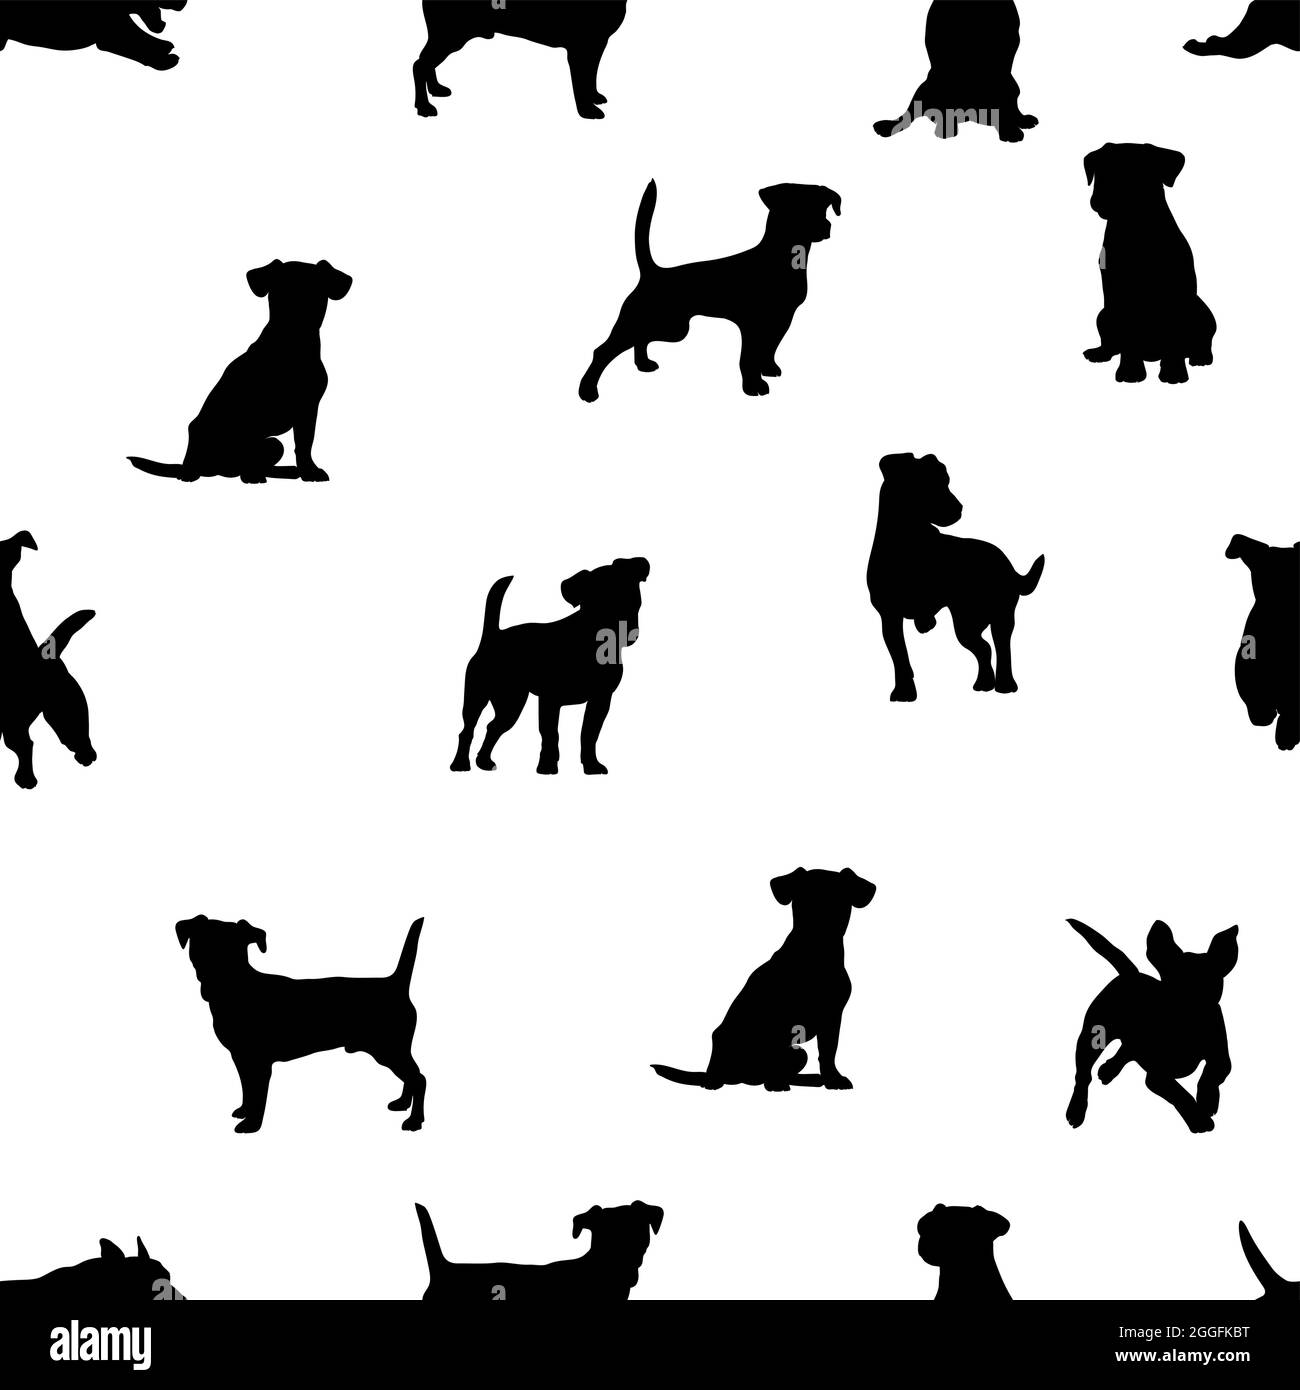 Jack Russell Terrier patrón, perro realista, blanco y negro, imagen para decoración, embalaje e impresión Ilustración del Vector